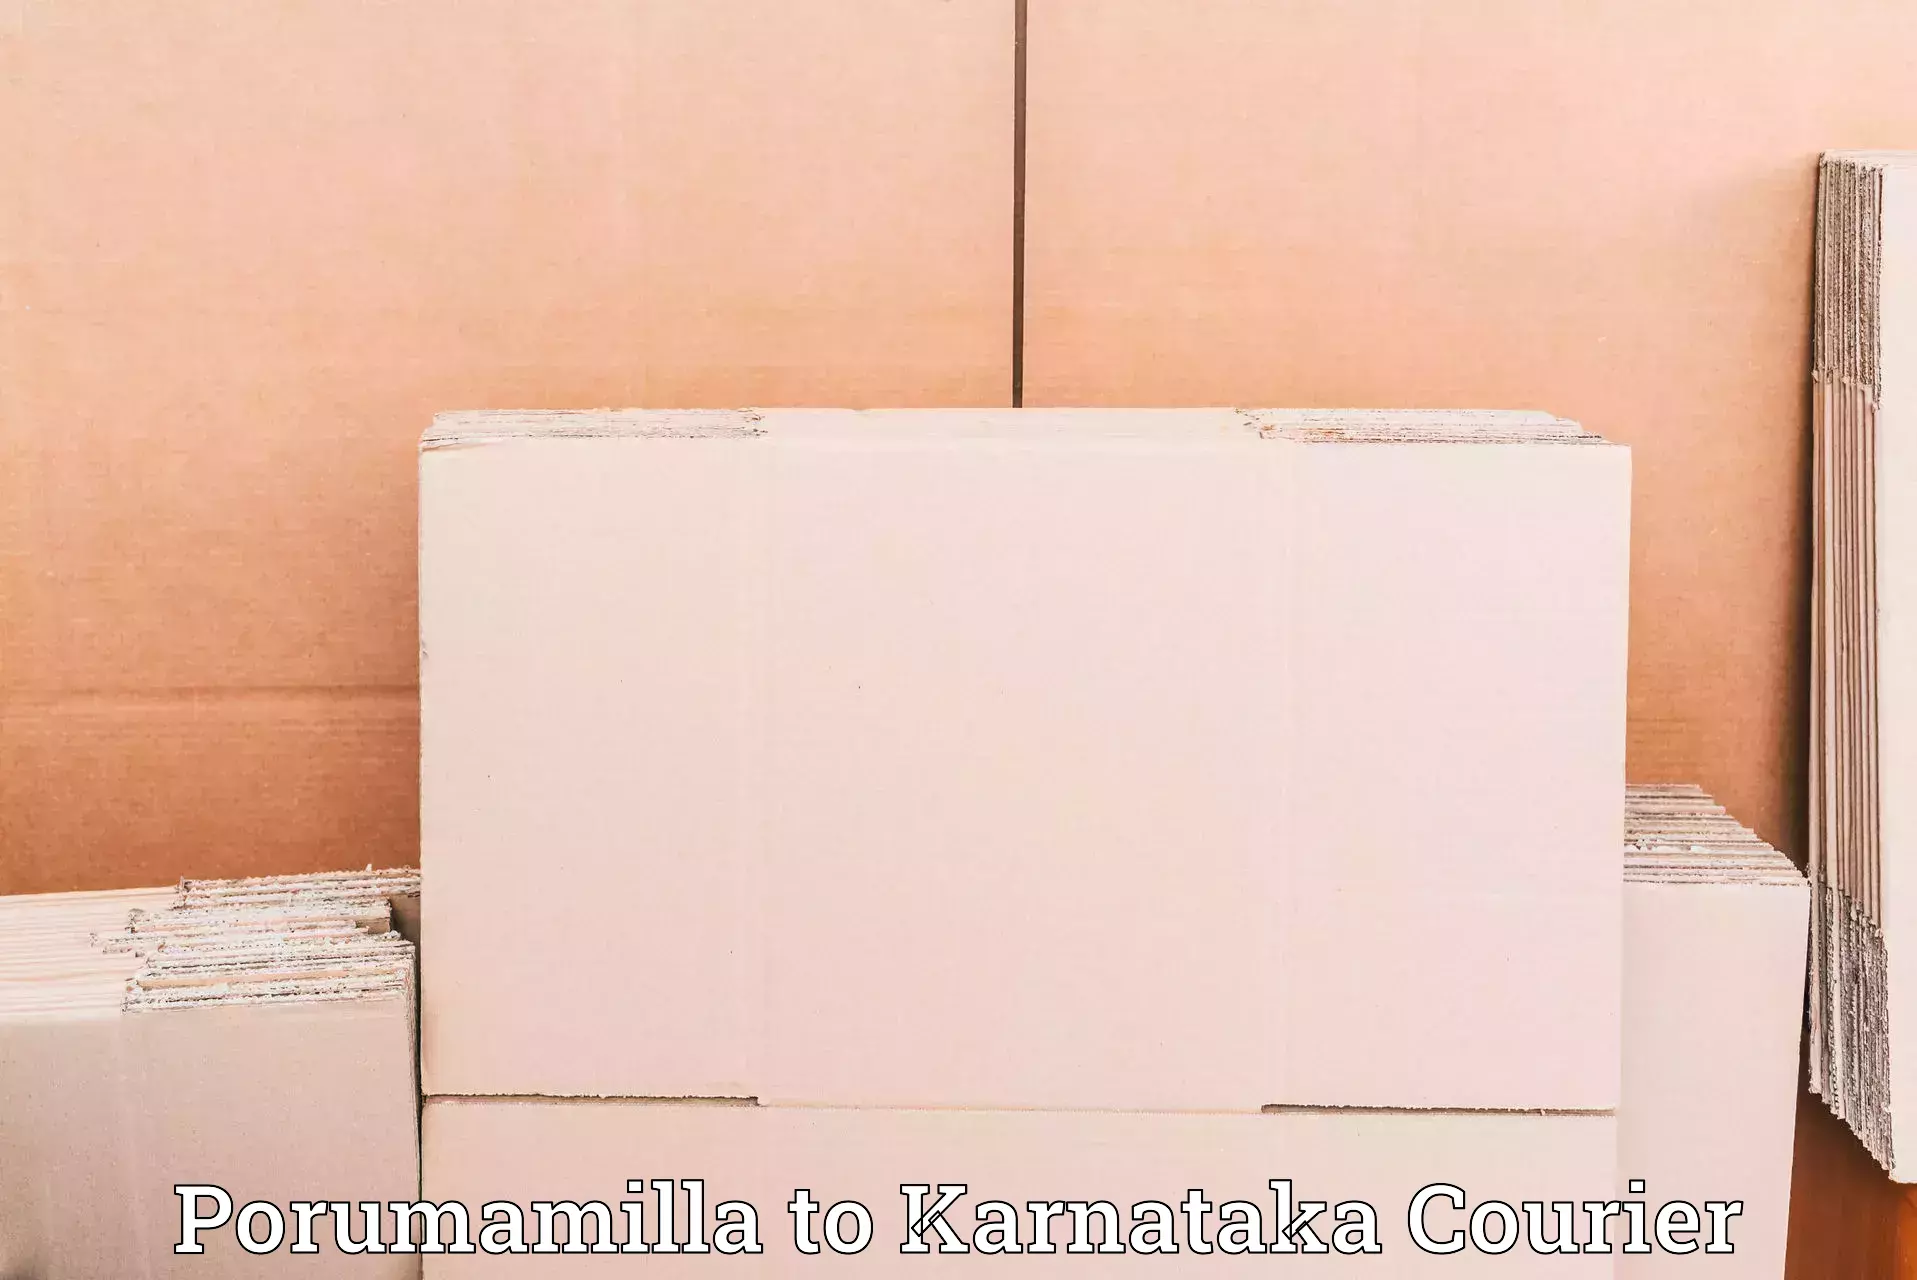 Next-day freight services Porumamilla to Karnataka